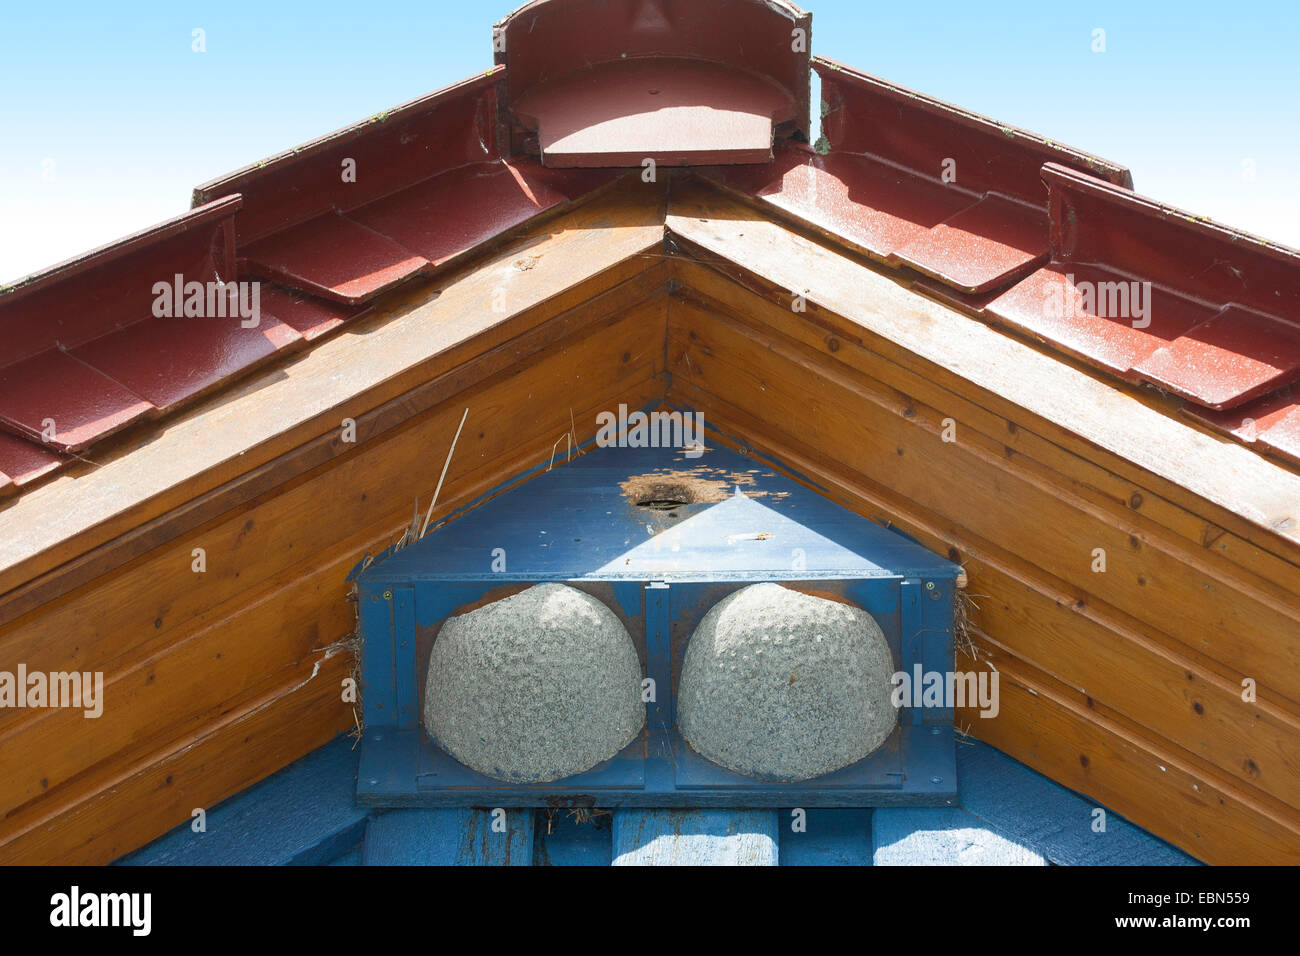 Casa comune martin (Delichon urbica), casella di nidificazione per casa martins e storni nel tetto a capanna di una casa, Germania Foto Stock